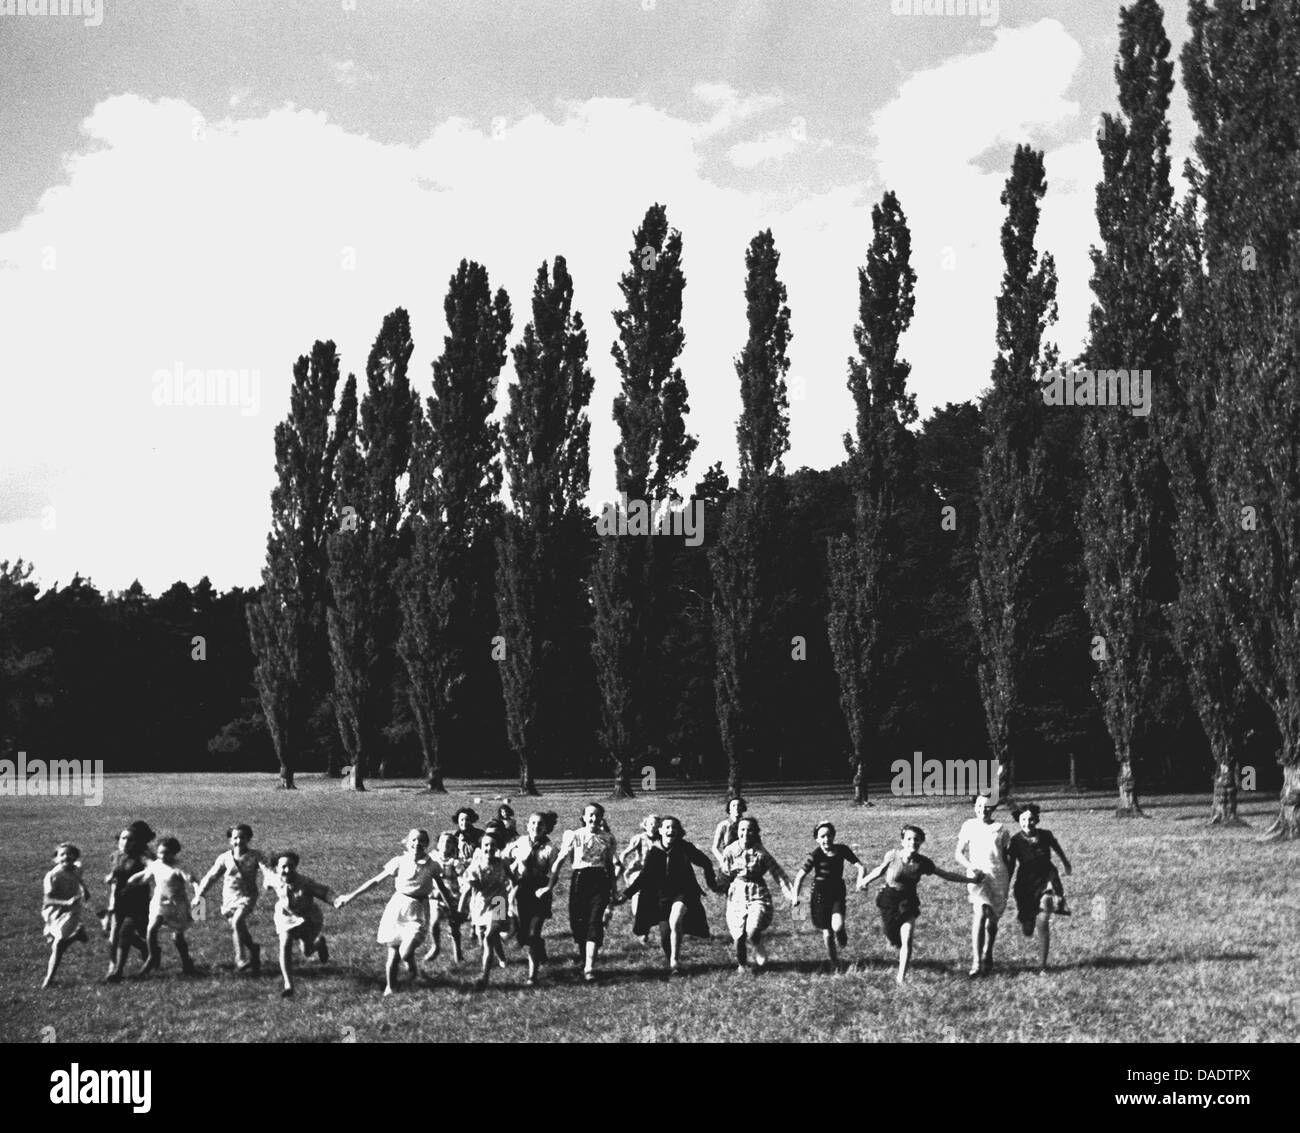 1938, les enfants et les adultes courir sur pré. Image by photographe Fred Stein (1909-1967) qui a émigré à partir de 1933 l'Allemagne nazie pour la France et enfin aux États-Unis. Banque D'Images